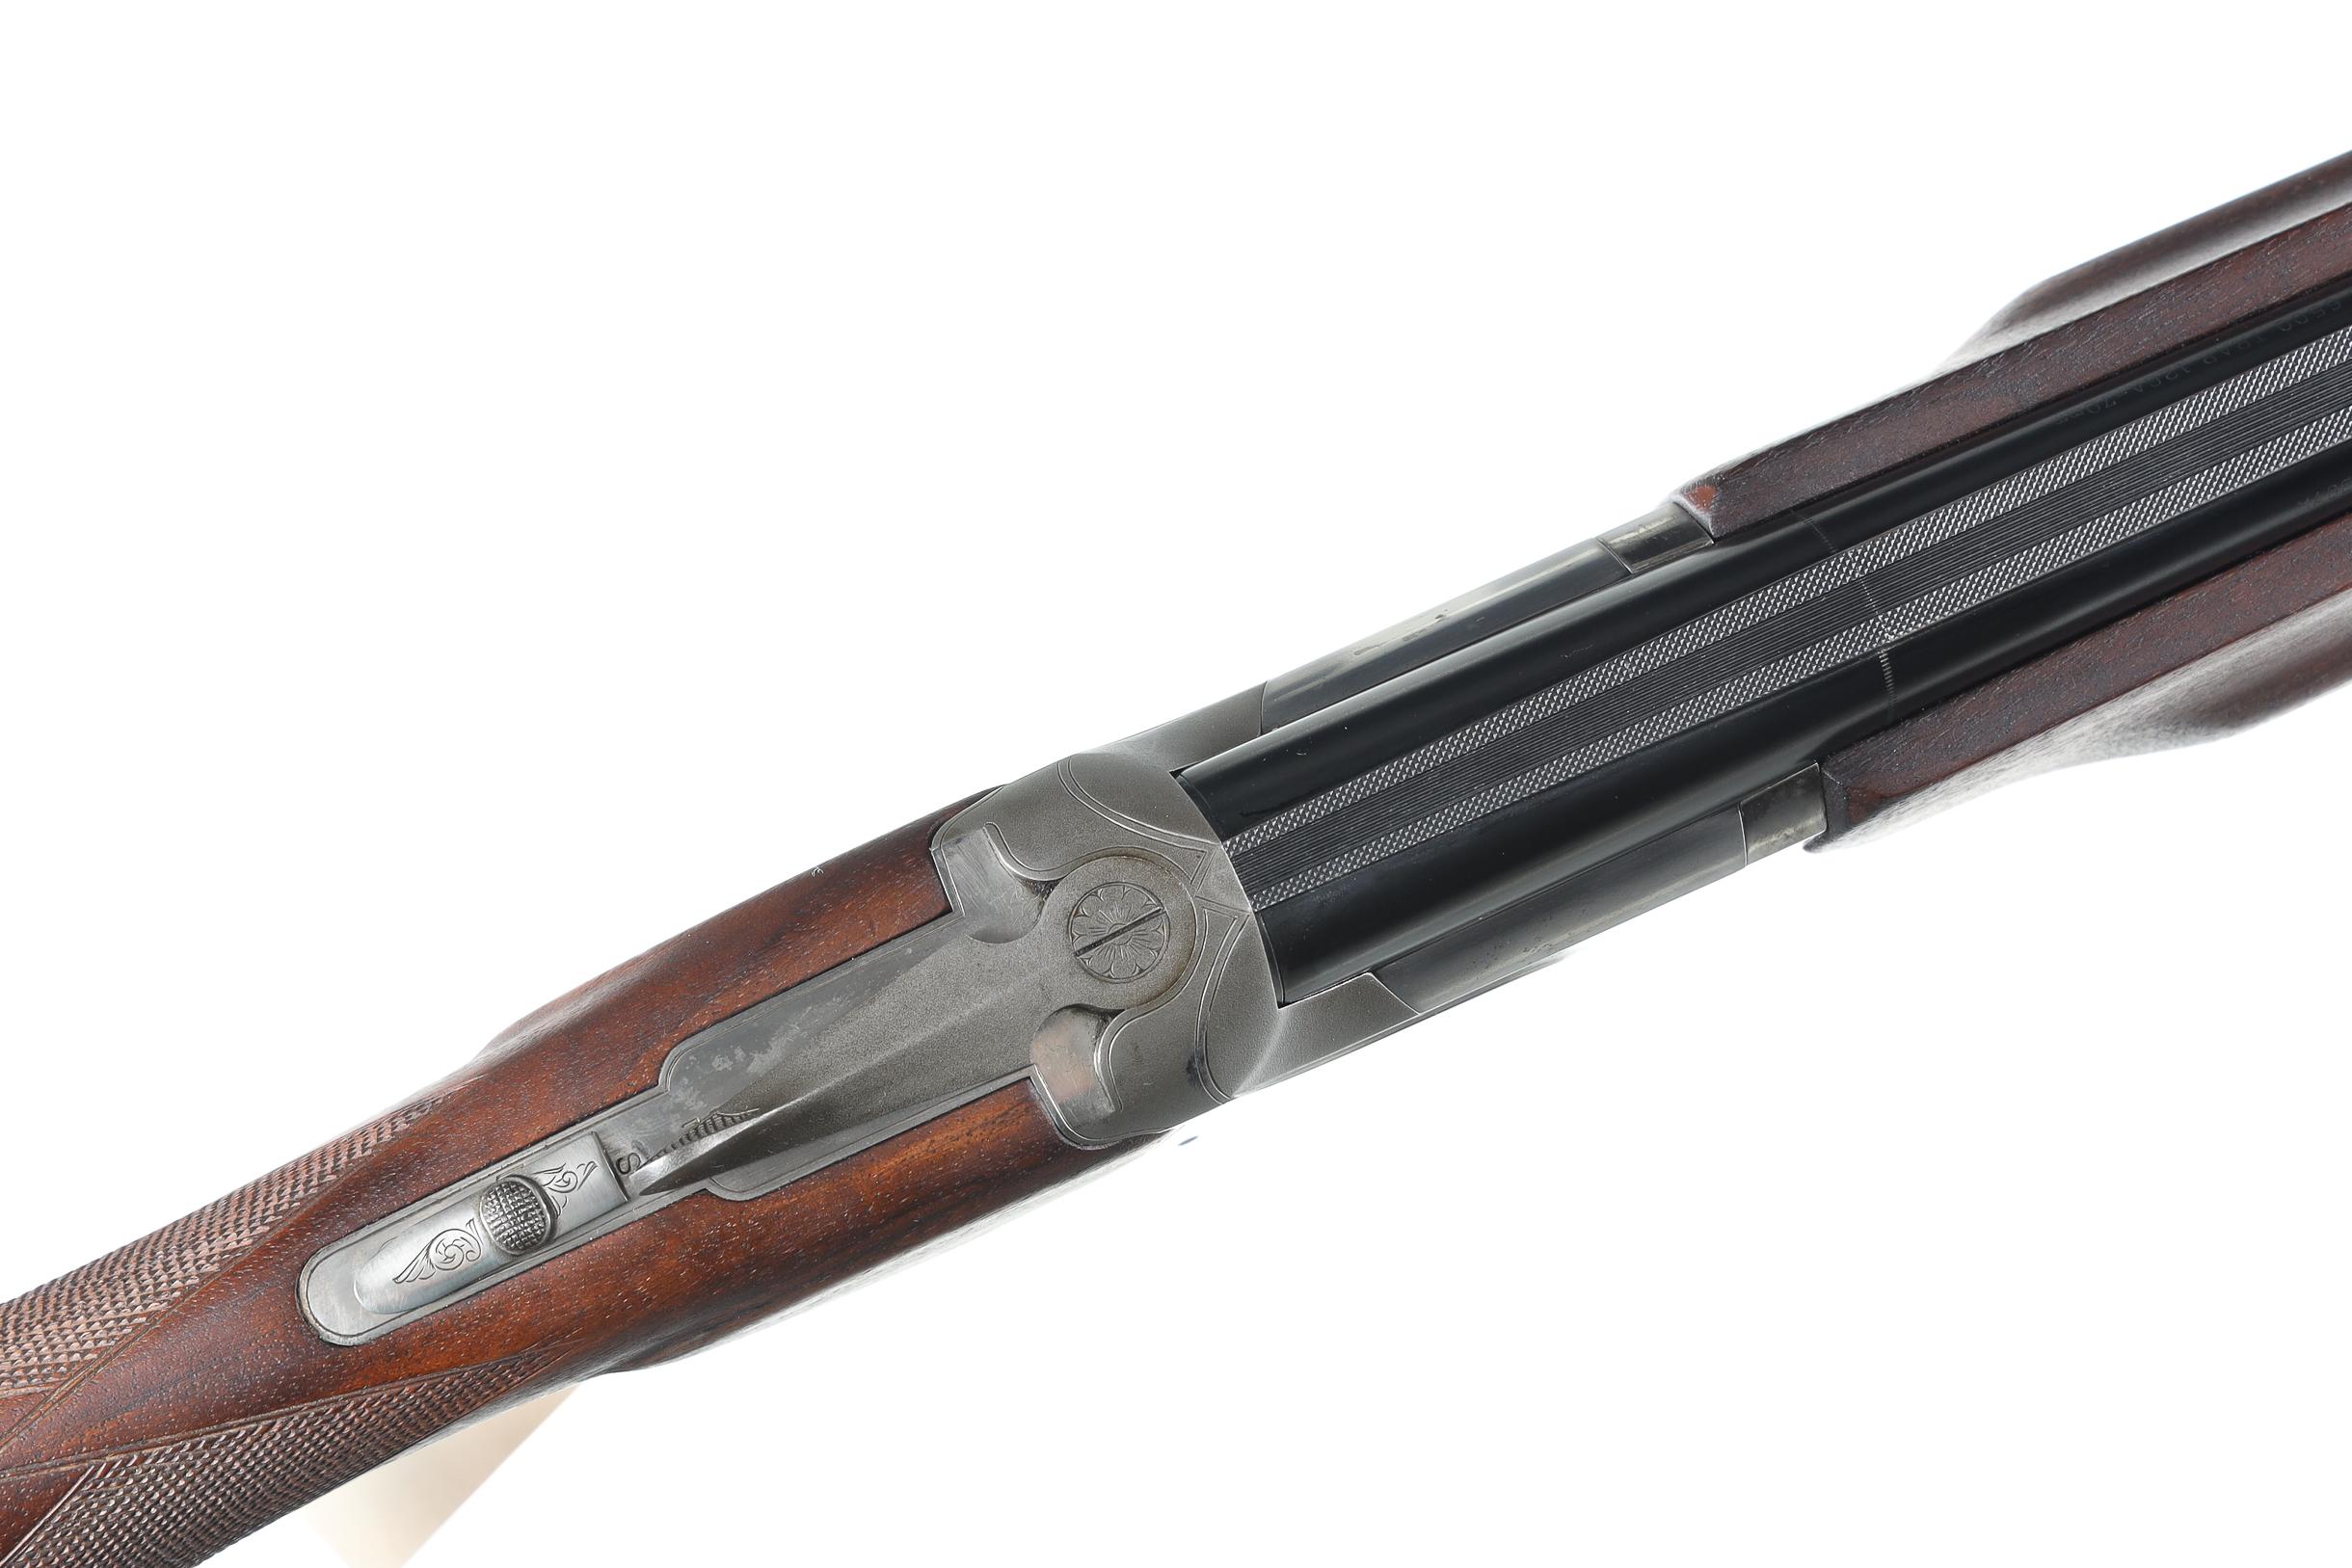 Winchester 6500 Trap O/U Shotgun 12ga